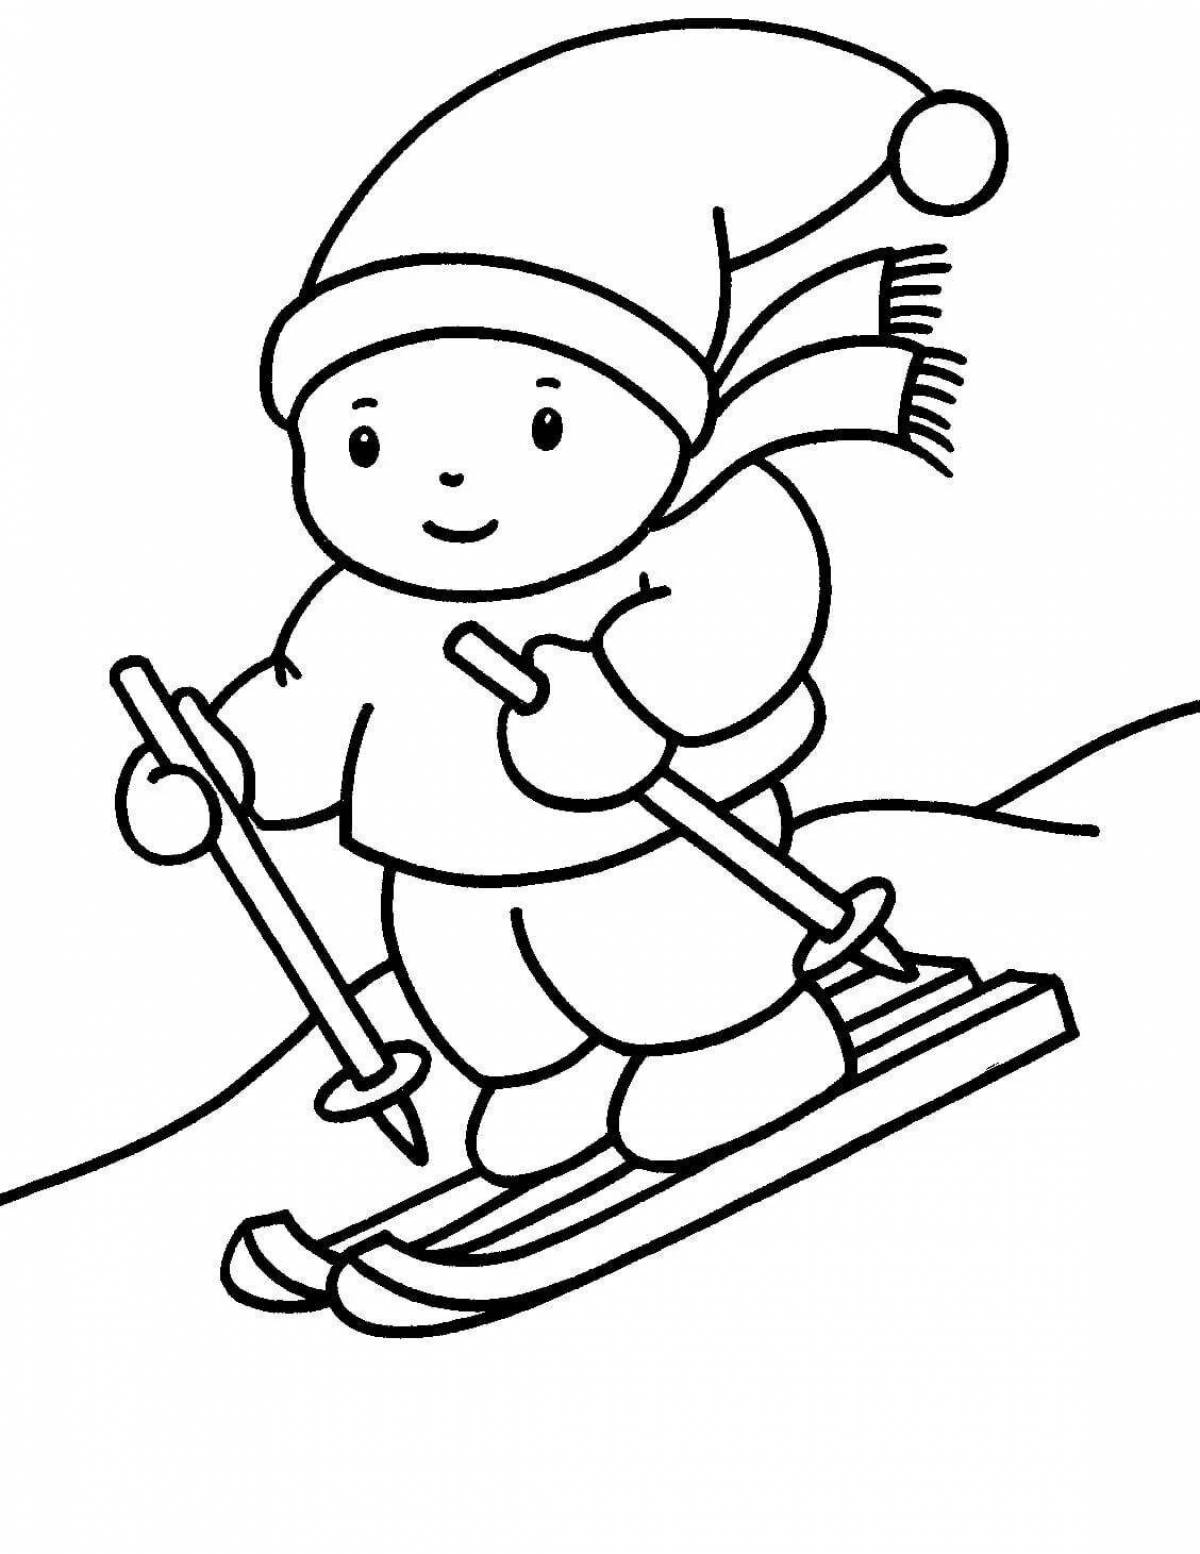 Веселая раскраска лыжник для детей 5-6 лет